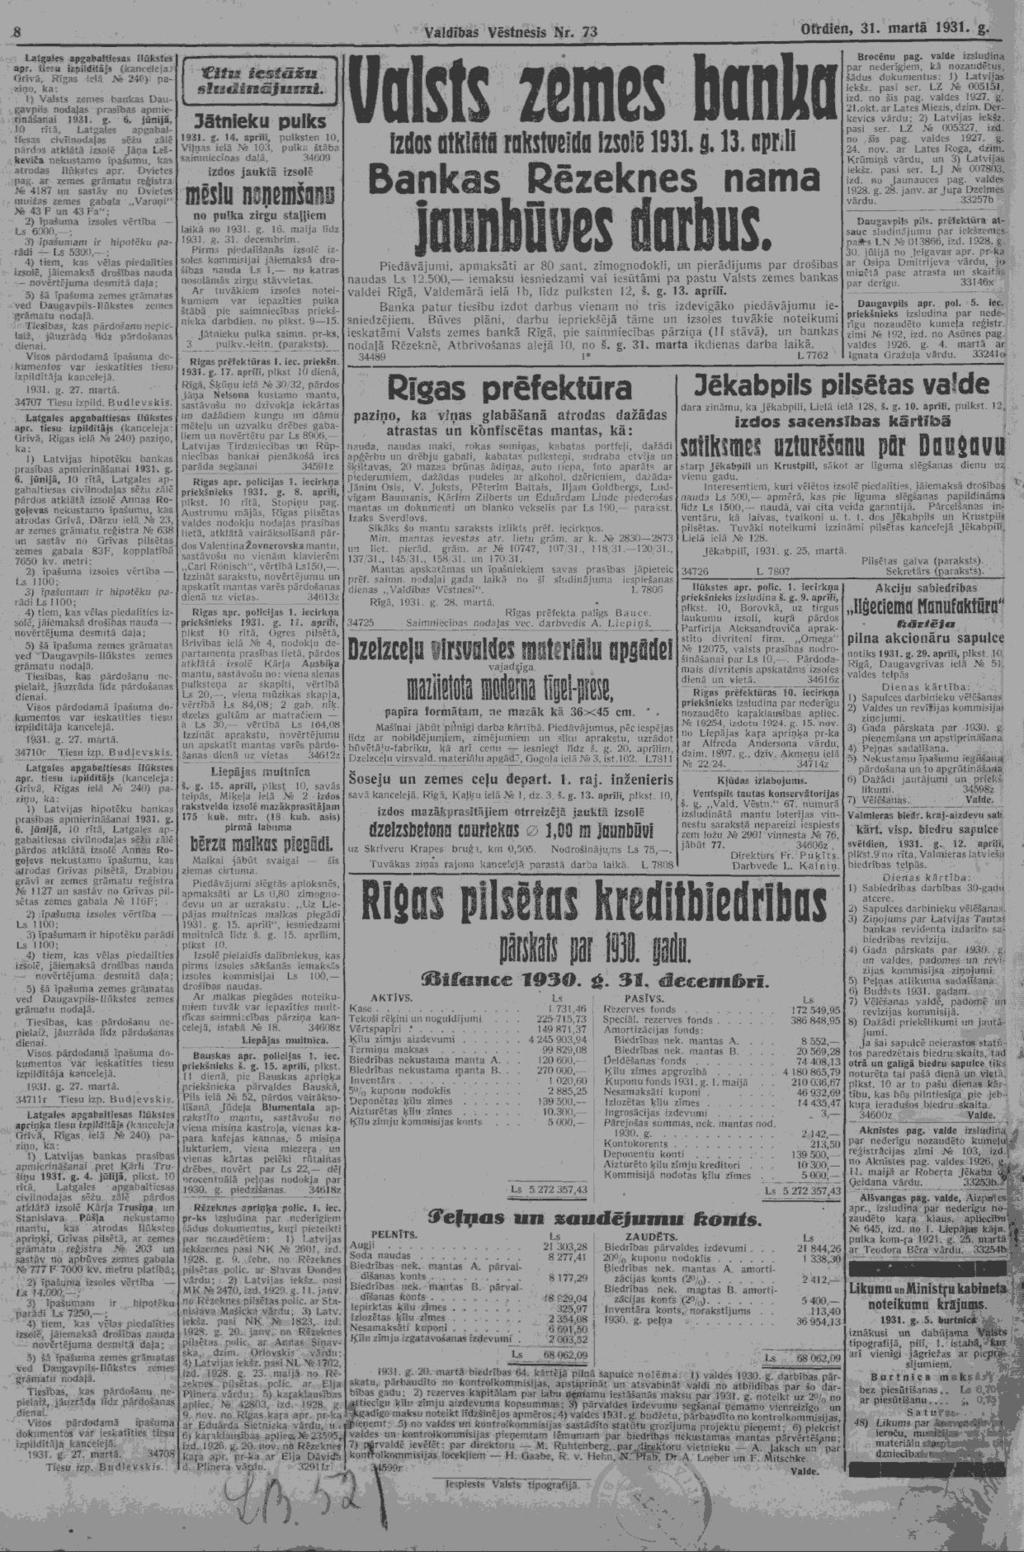 Grīvā, Rīgas i-?"".nē 24f) paka: 1) Valsts zemes bankas Daugavpils nodaļas prasības apmierināšanai 1931. g. 6.